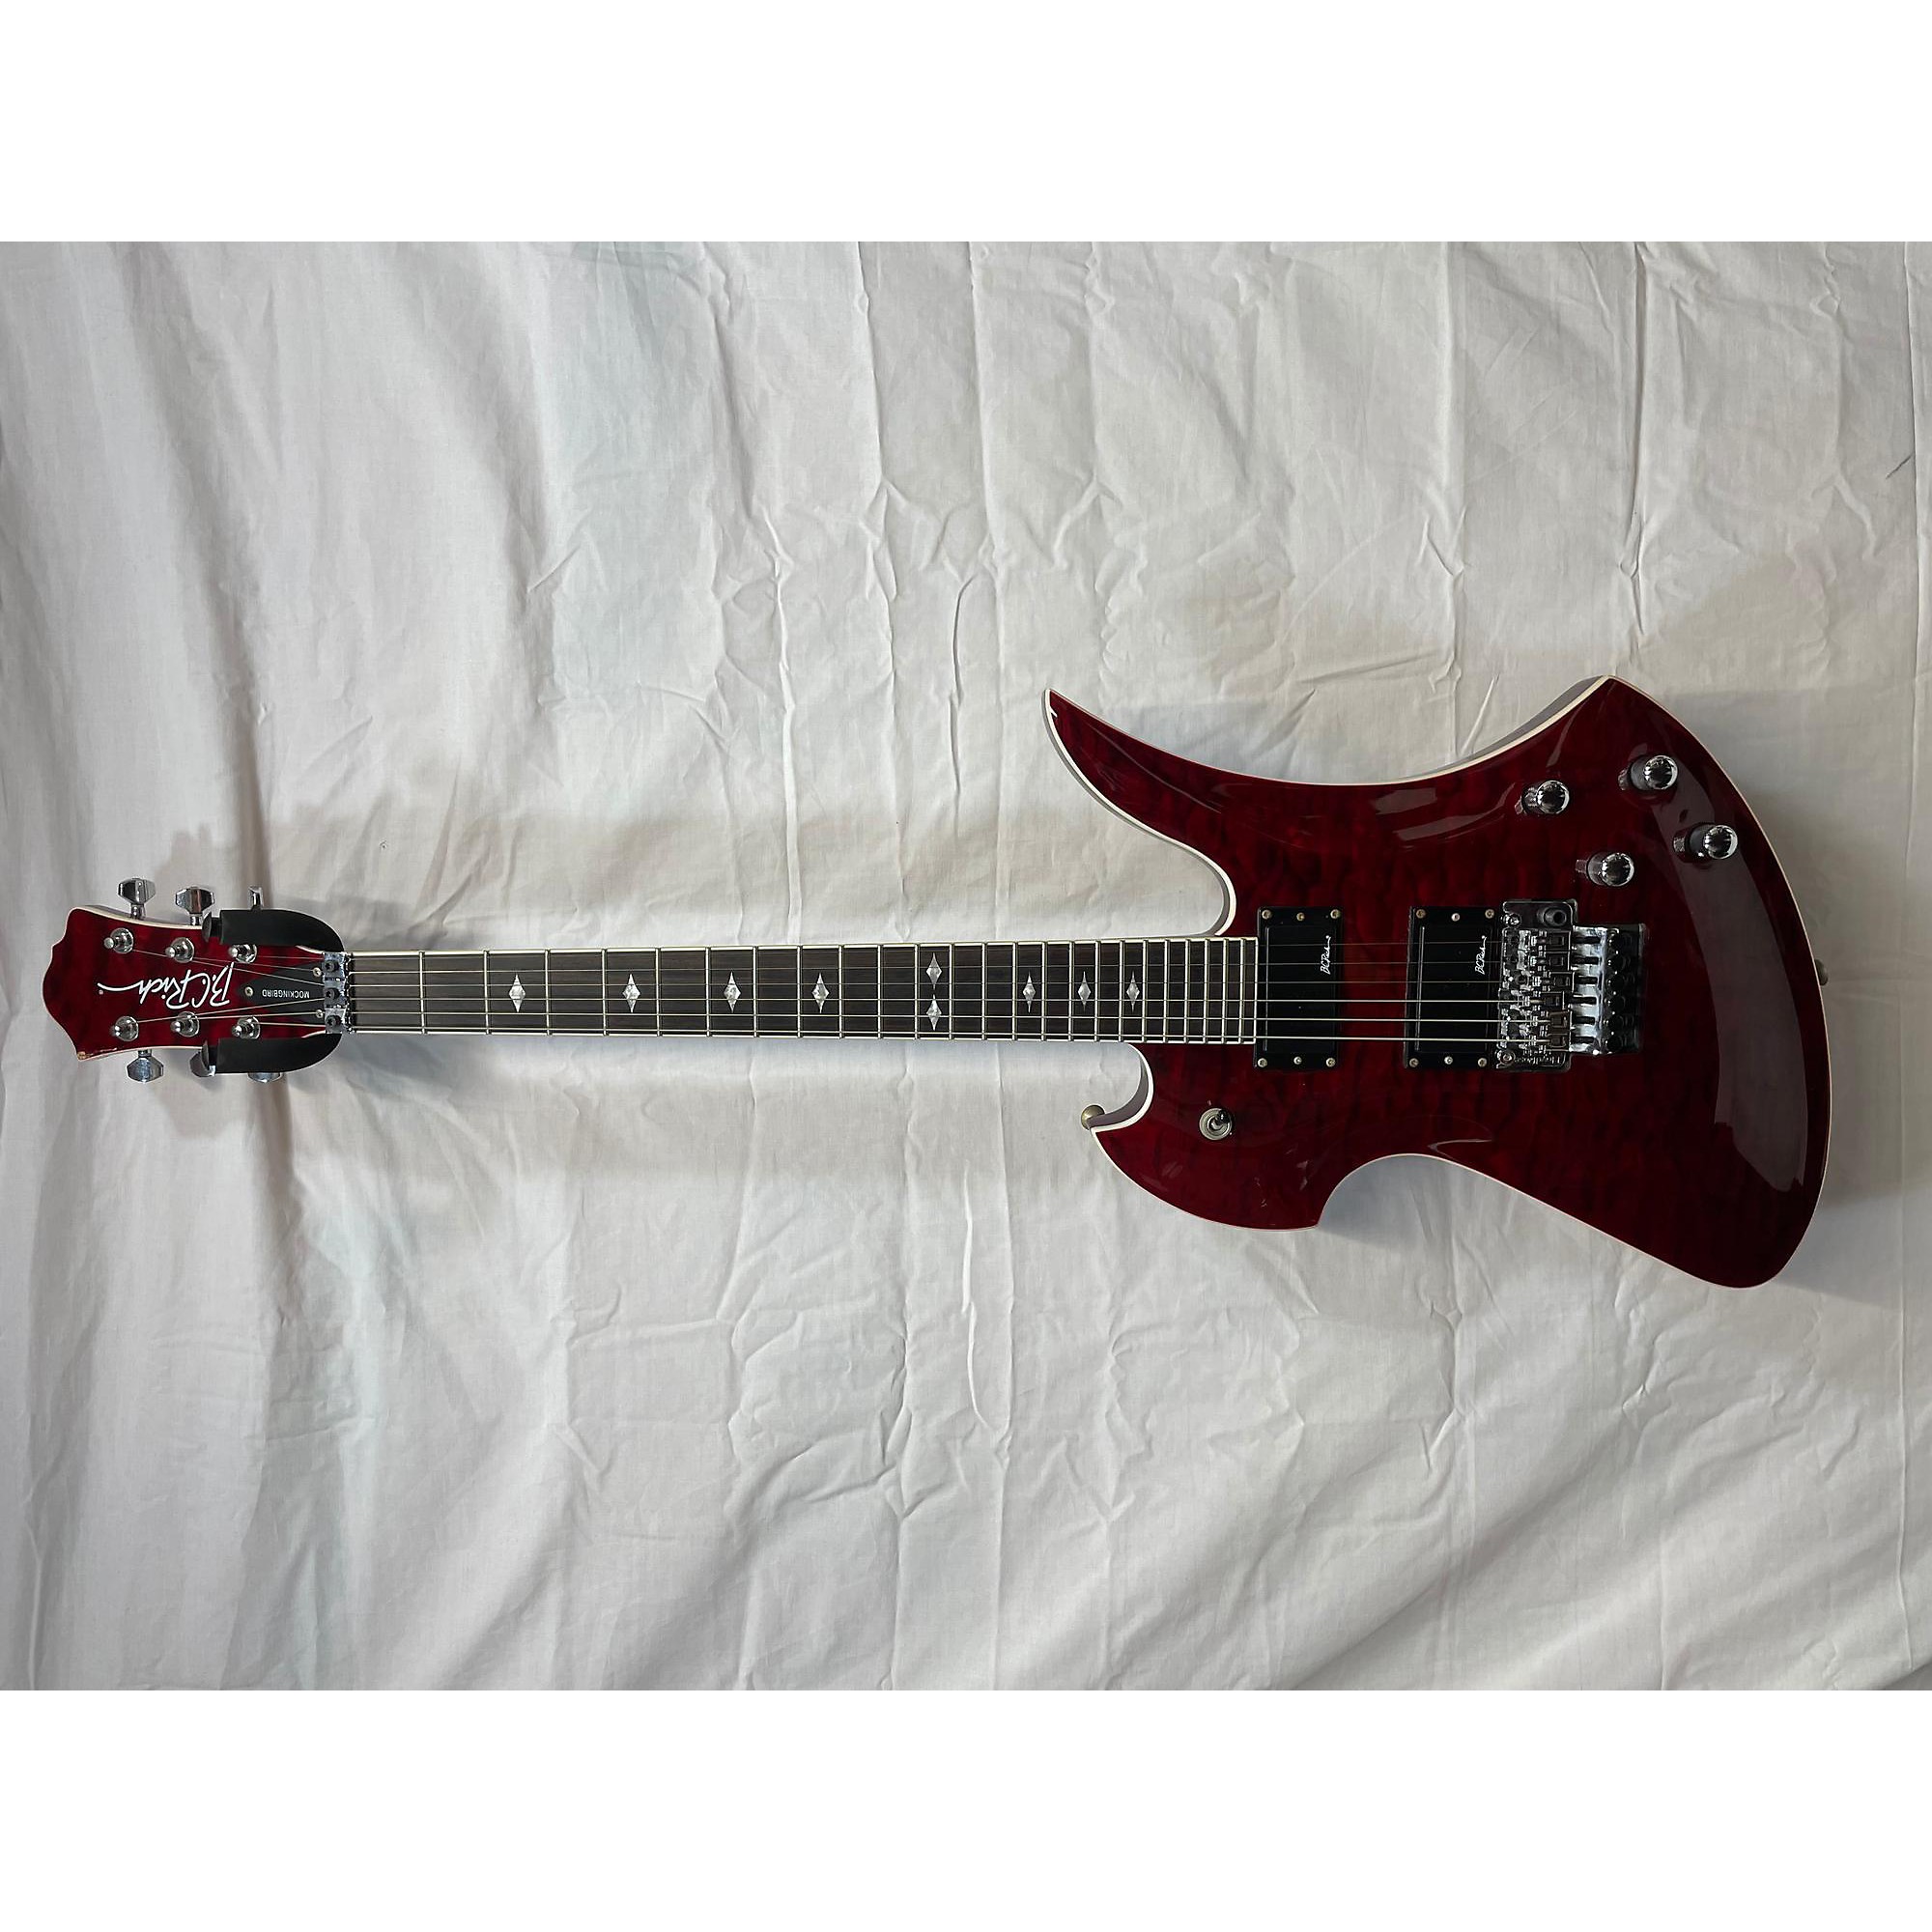 Used B.C. Rich Pro X Mockingbird Solid Body Electric Guitar